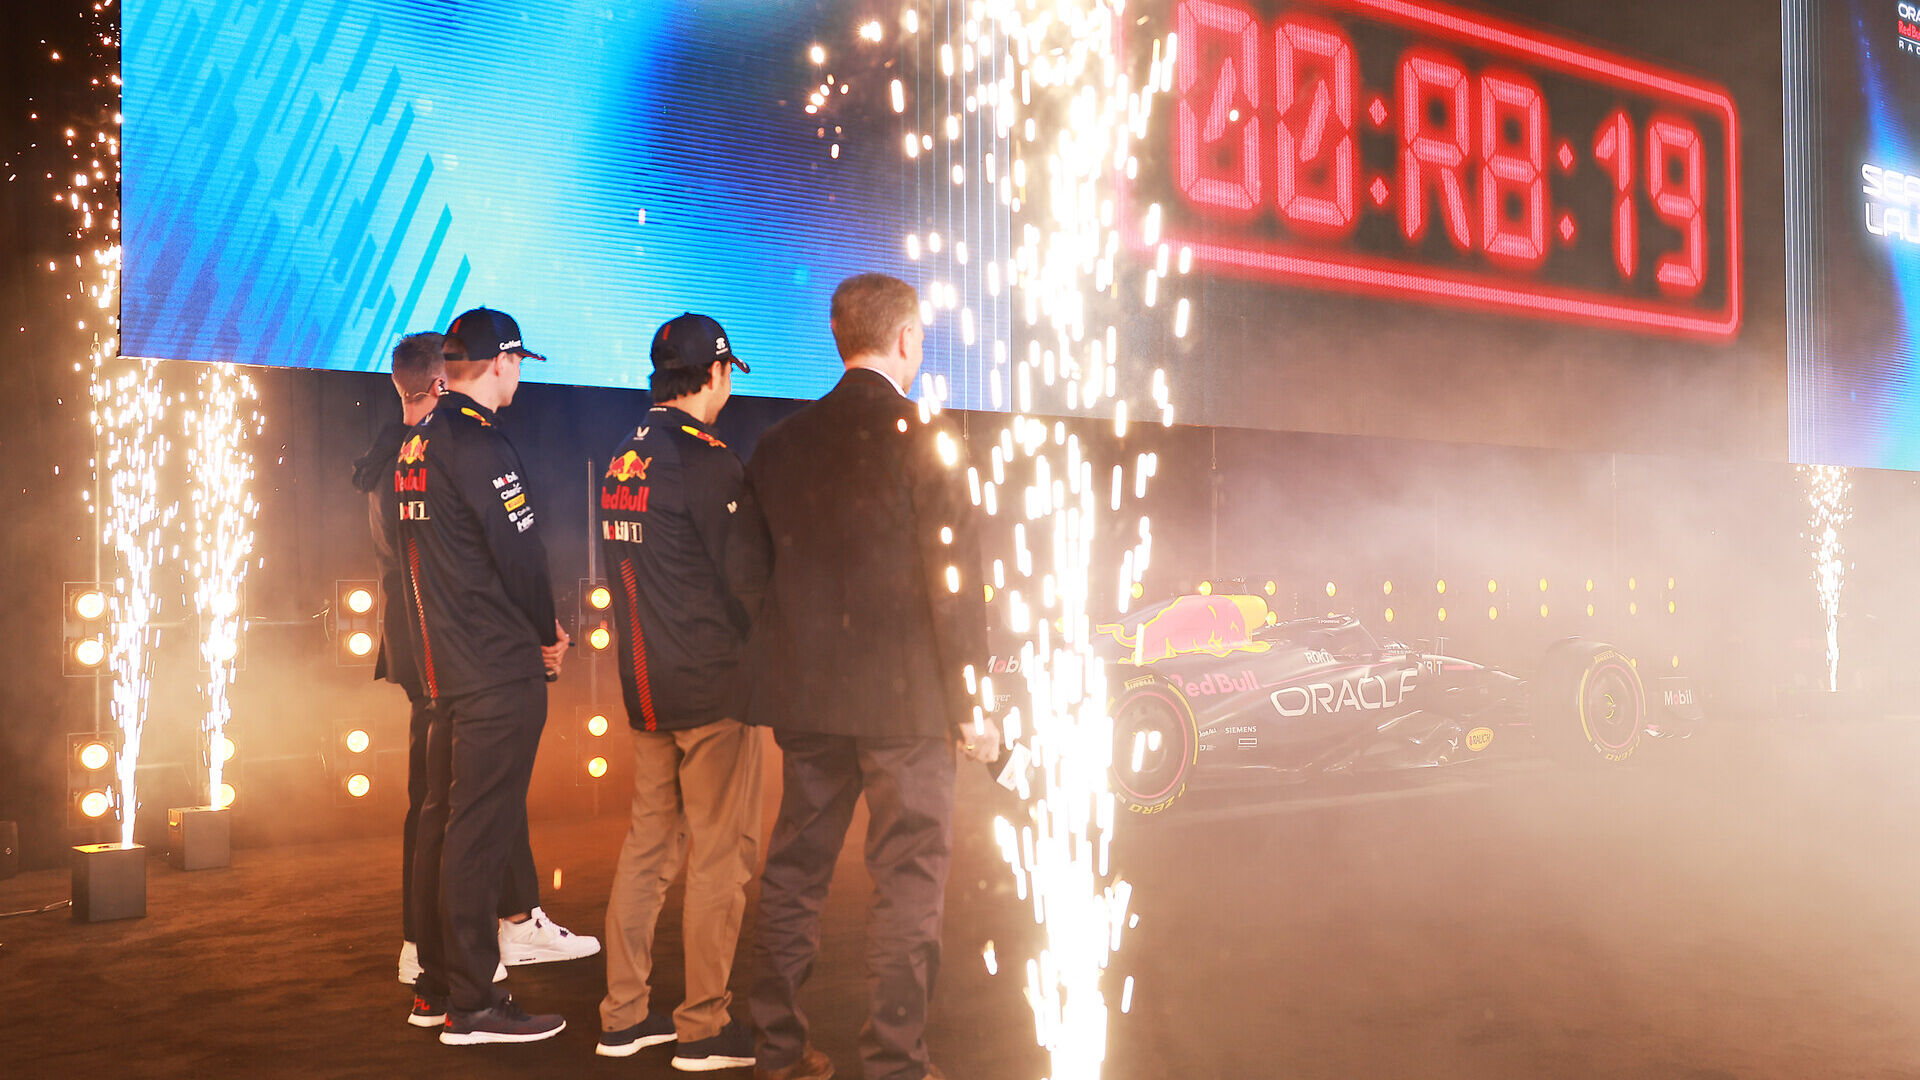 Red Bull: la Oracle Red Bull Racing di Formula 1 ha lanciato il nuovo programma 2023 del team a New York City